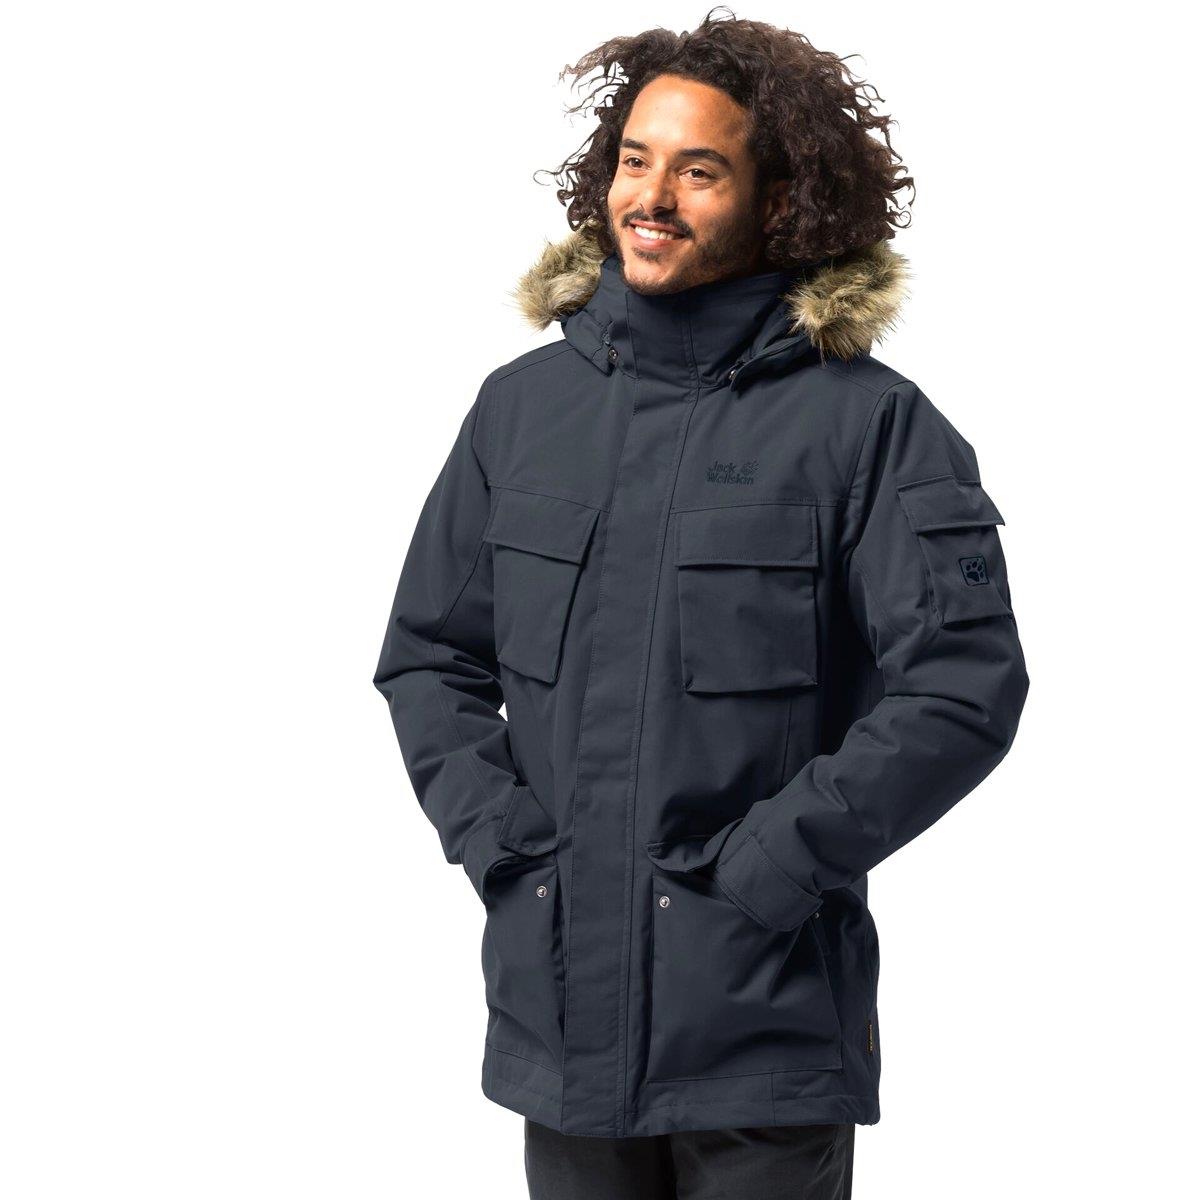 Куртка мужская GLACIER CANYON PARKA купить недорого | Интернет-магазин  Трофей